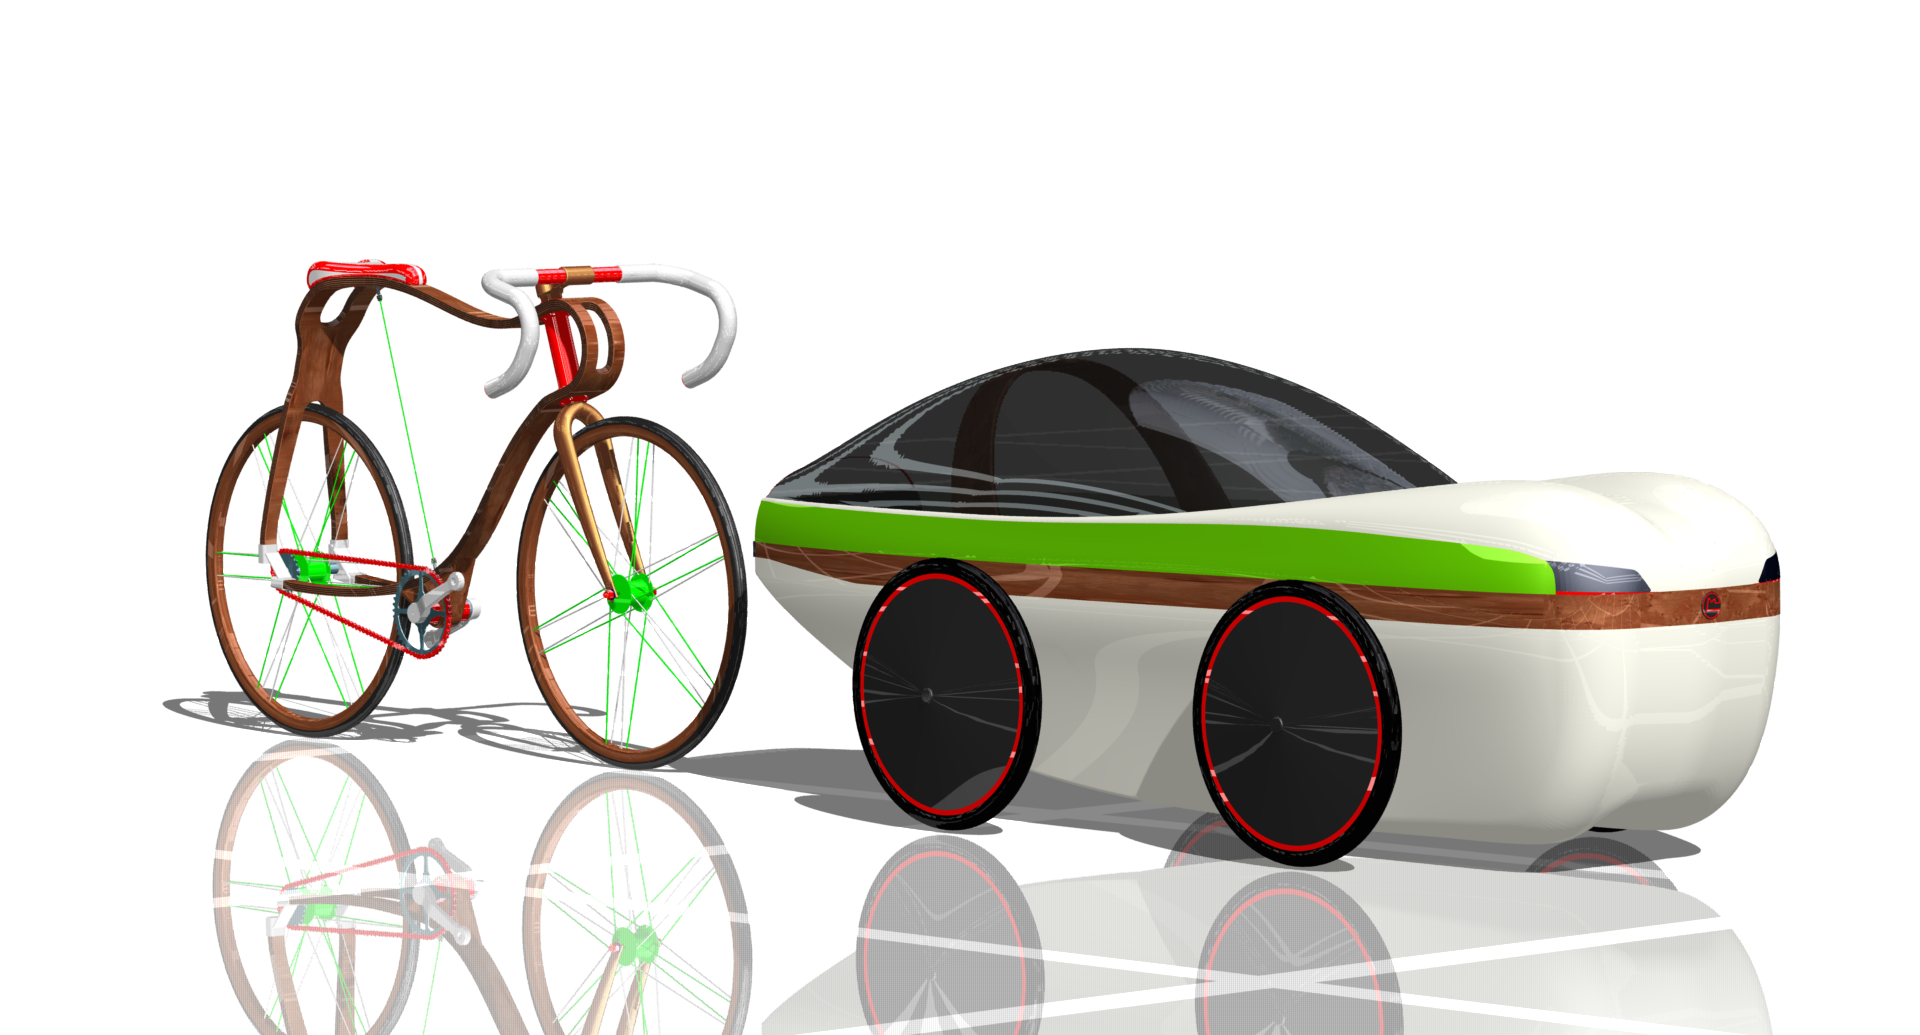 FH Wien – Eco-Design: Prototyp Vierrädriges Fahrzeug basierend auf Fahrradkomponenten